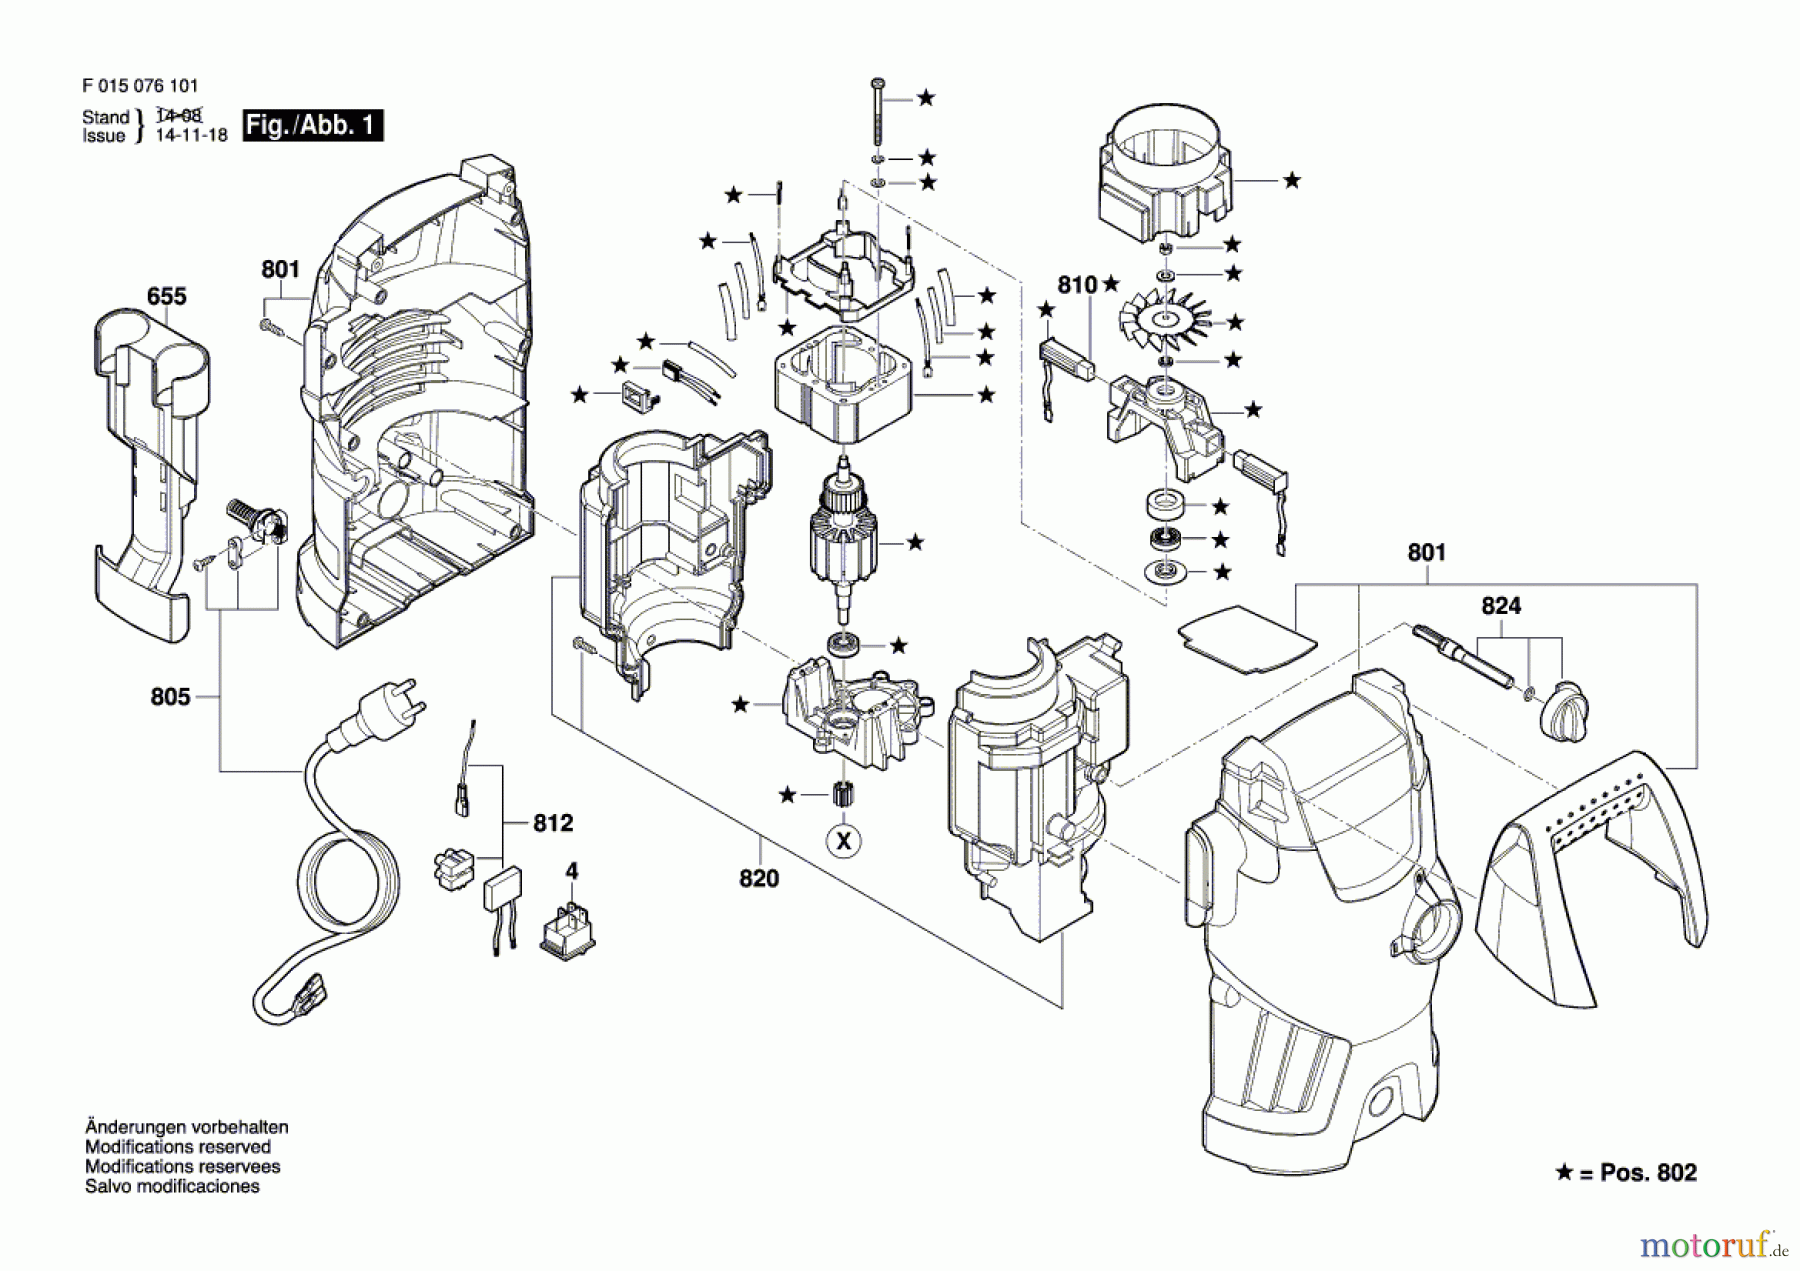  Bosch Wassertechnik Hochdruckreiniger 0761 Seite 1